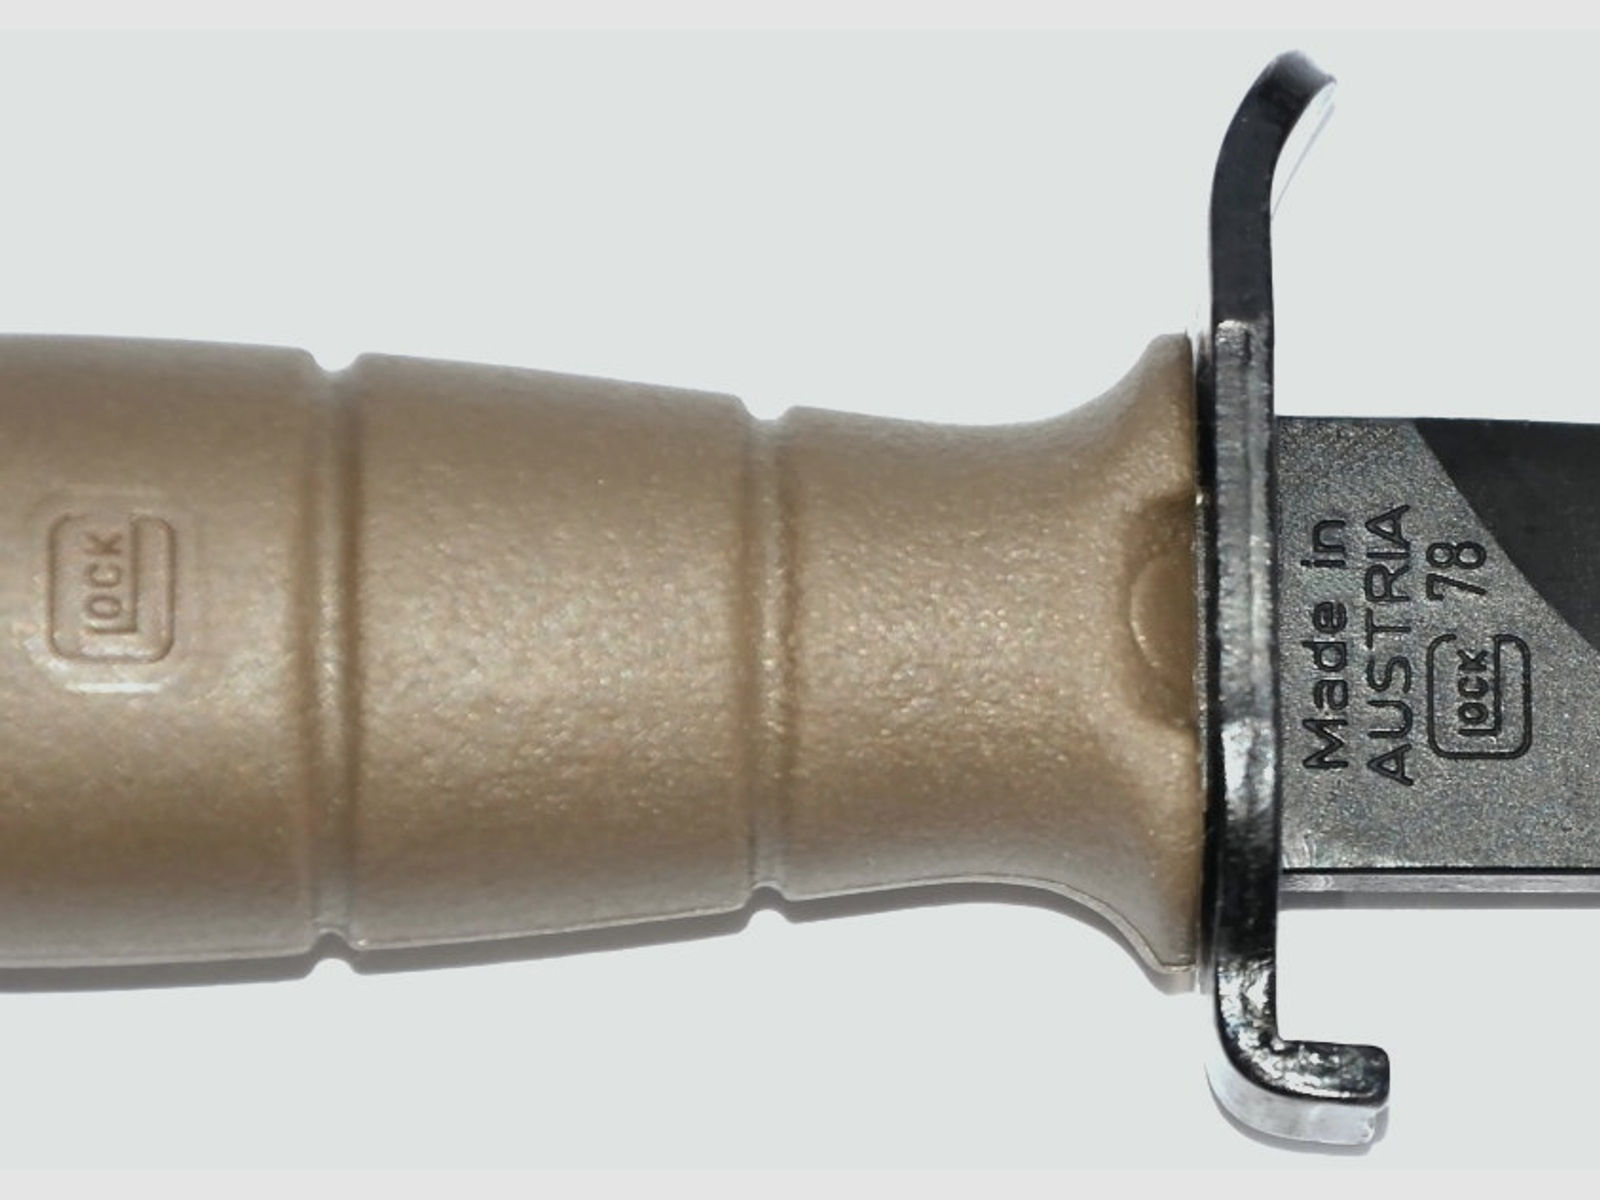 Glock Bajonett Kampfmesser, Farbe TAN